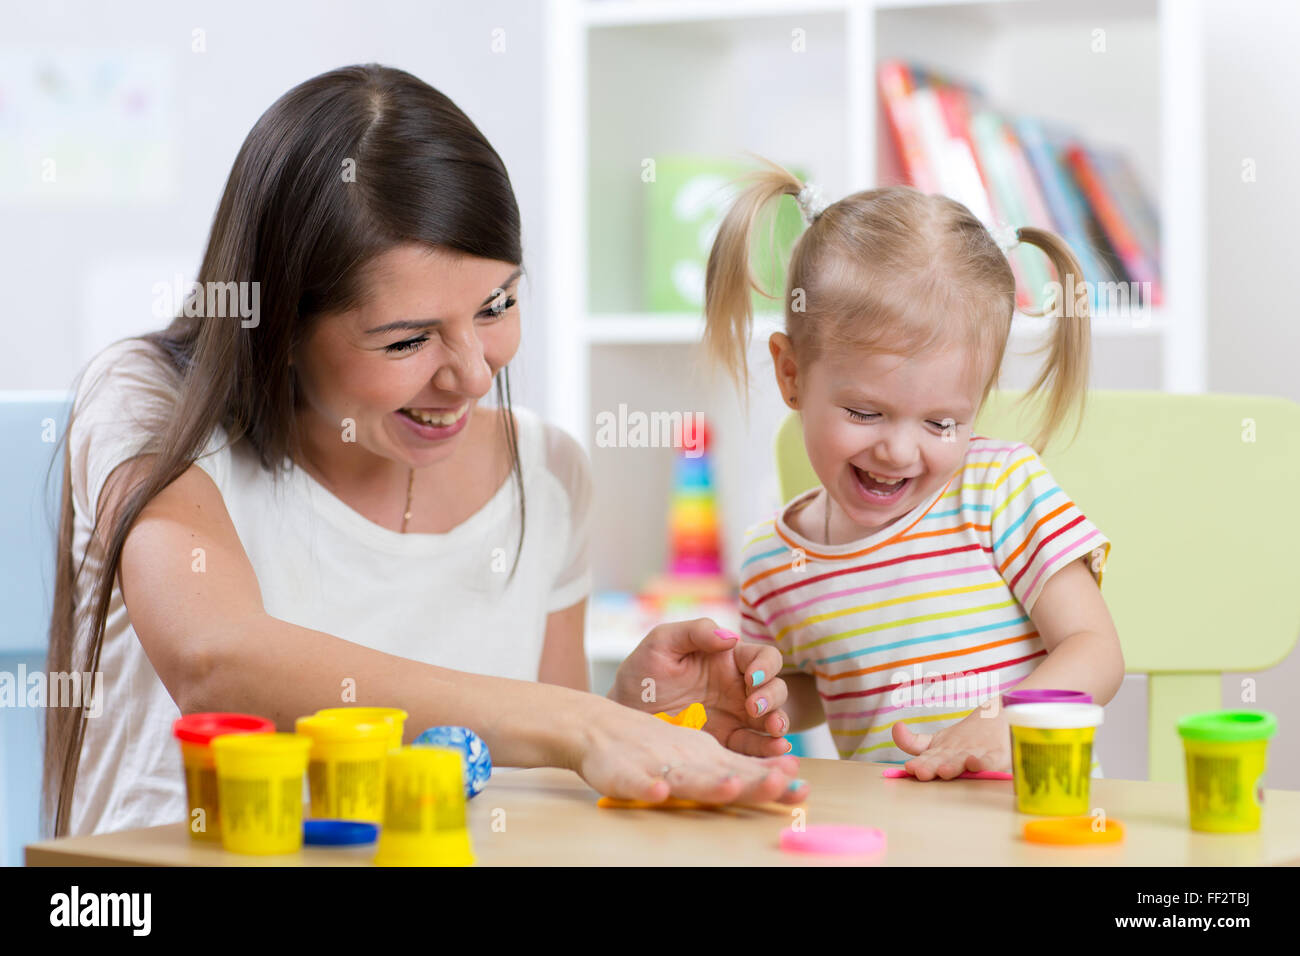 Junge hübsche Frau und Kind Mädchen spielen mit bunten Ton im Kindergarten Stockfoto